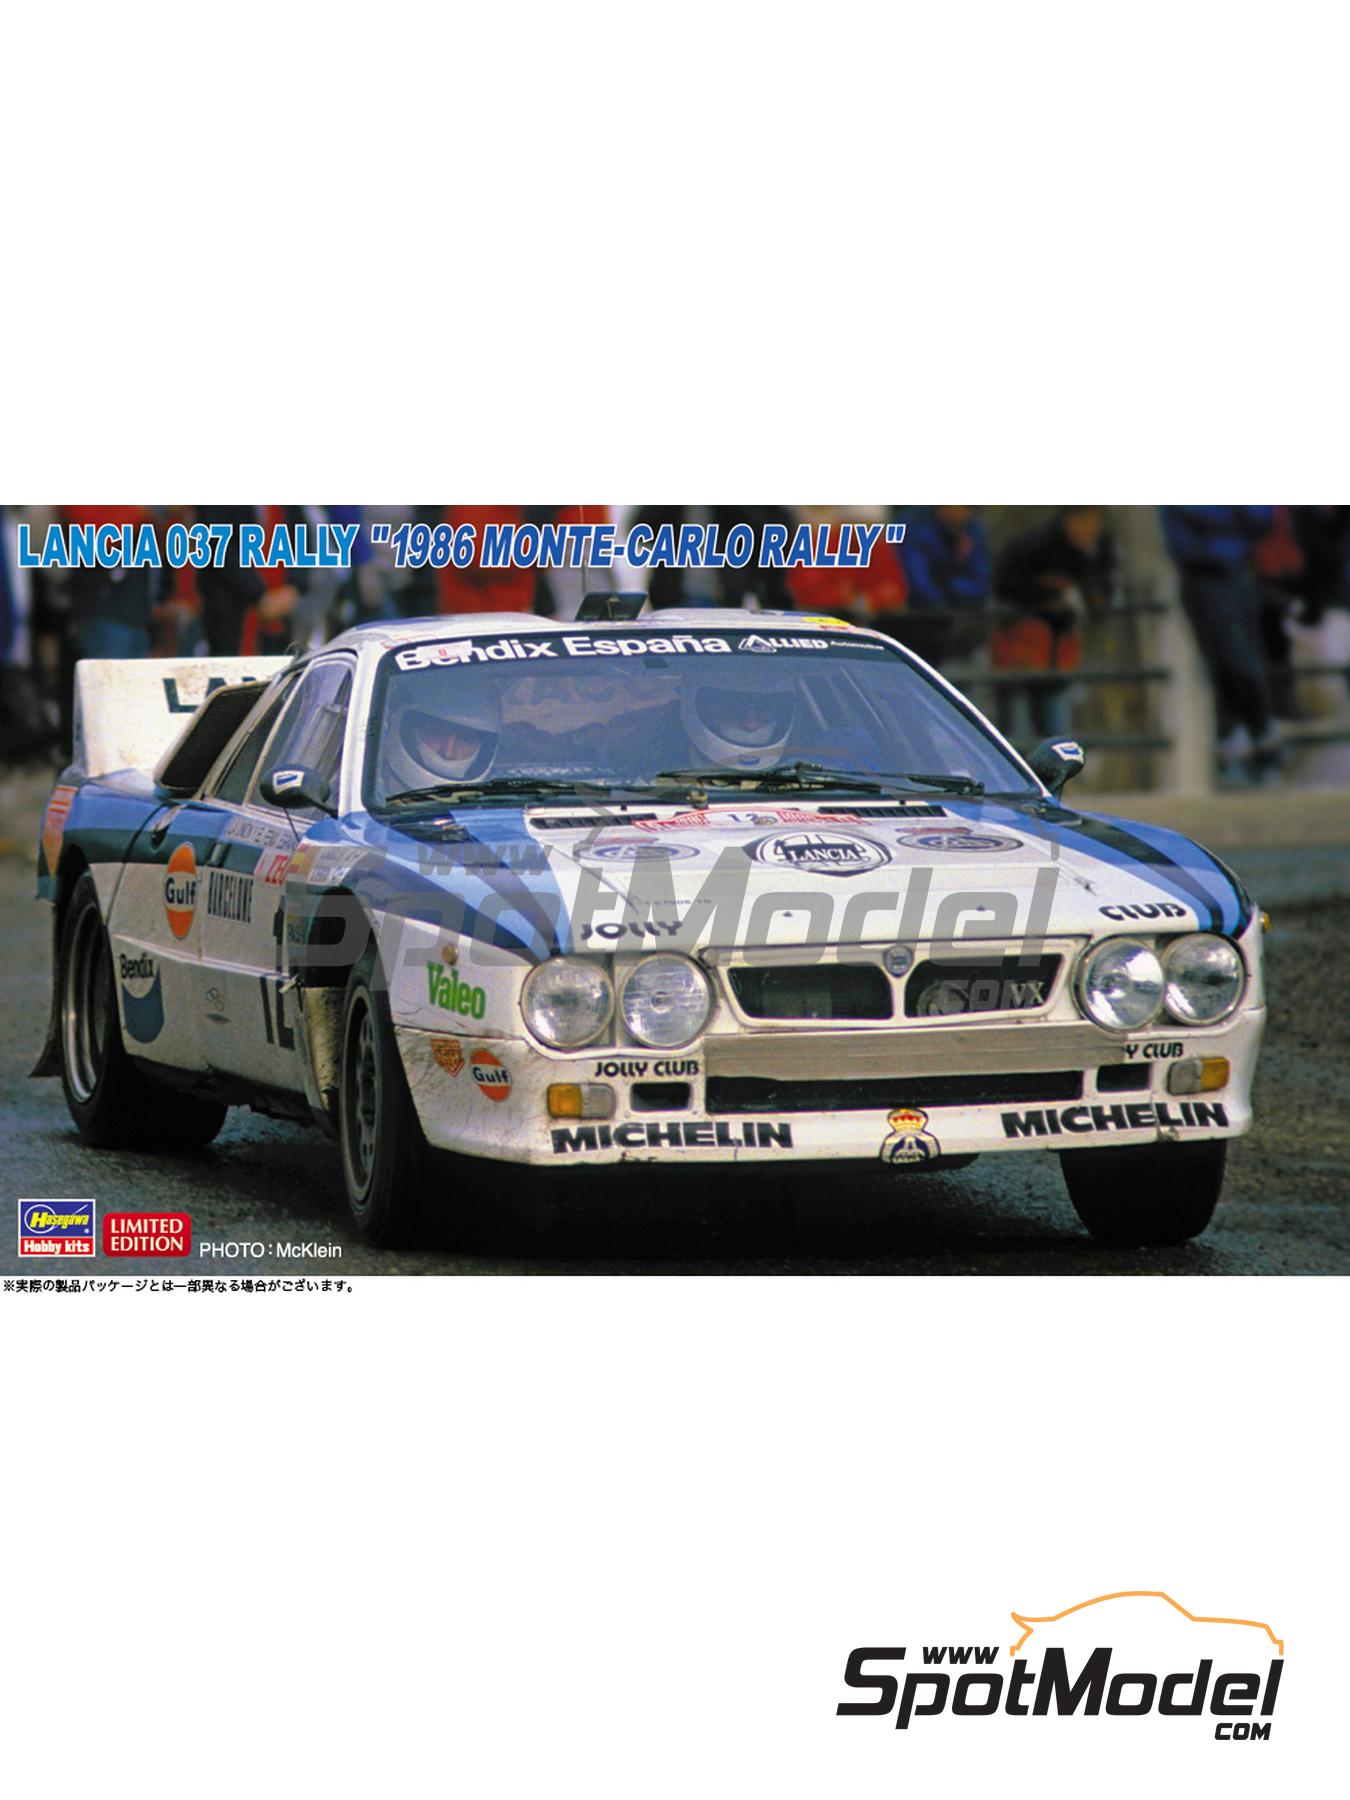 Hasegawa 20681: Car scale model kit 1/24 scale - Lancia 037 Rally